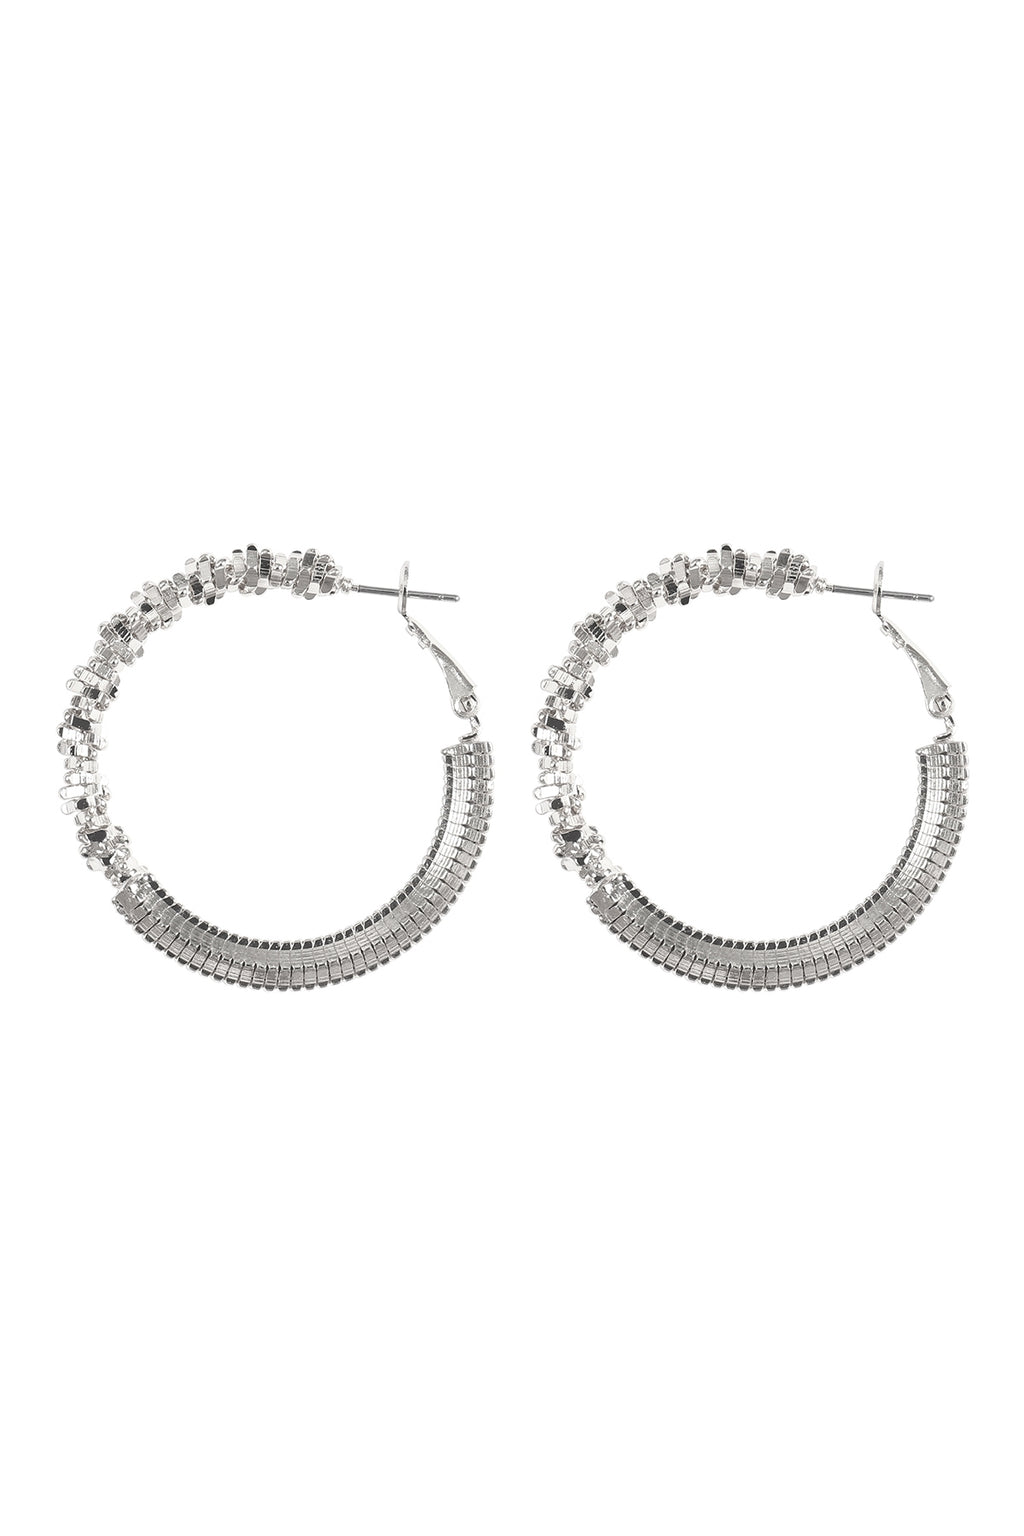 Abstract Textured Hoop Lock Earrings Silver - Pack of 6